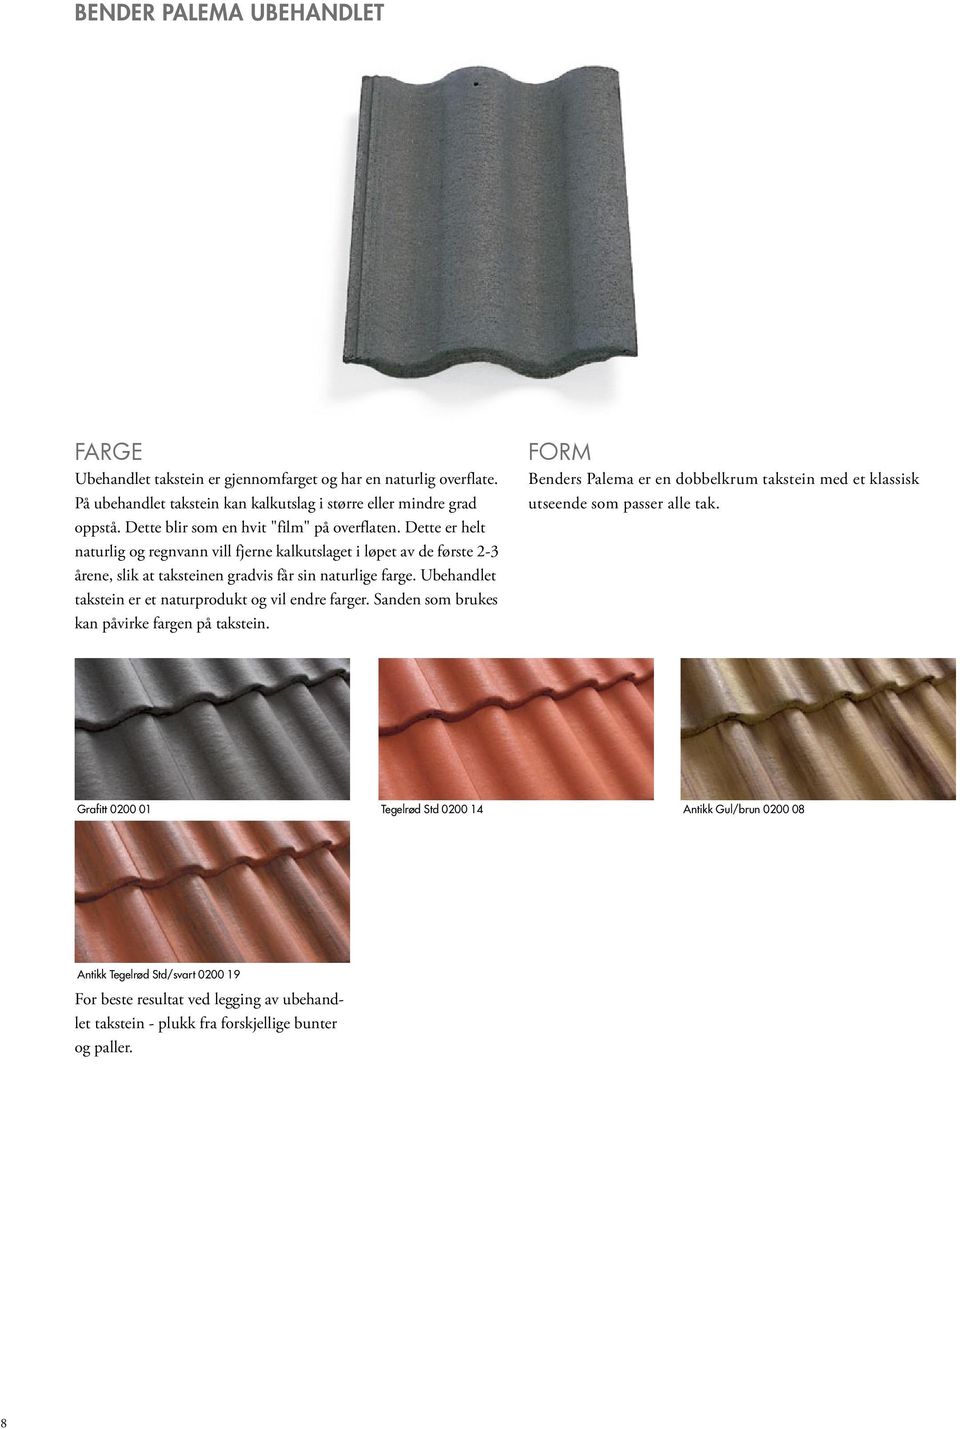 Ubehandlet takstein er et naturprodukt og vil endre farger. Sanden som brukes kan påvirke fargen på takstein.